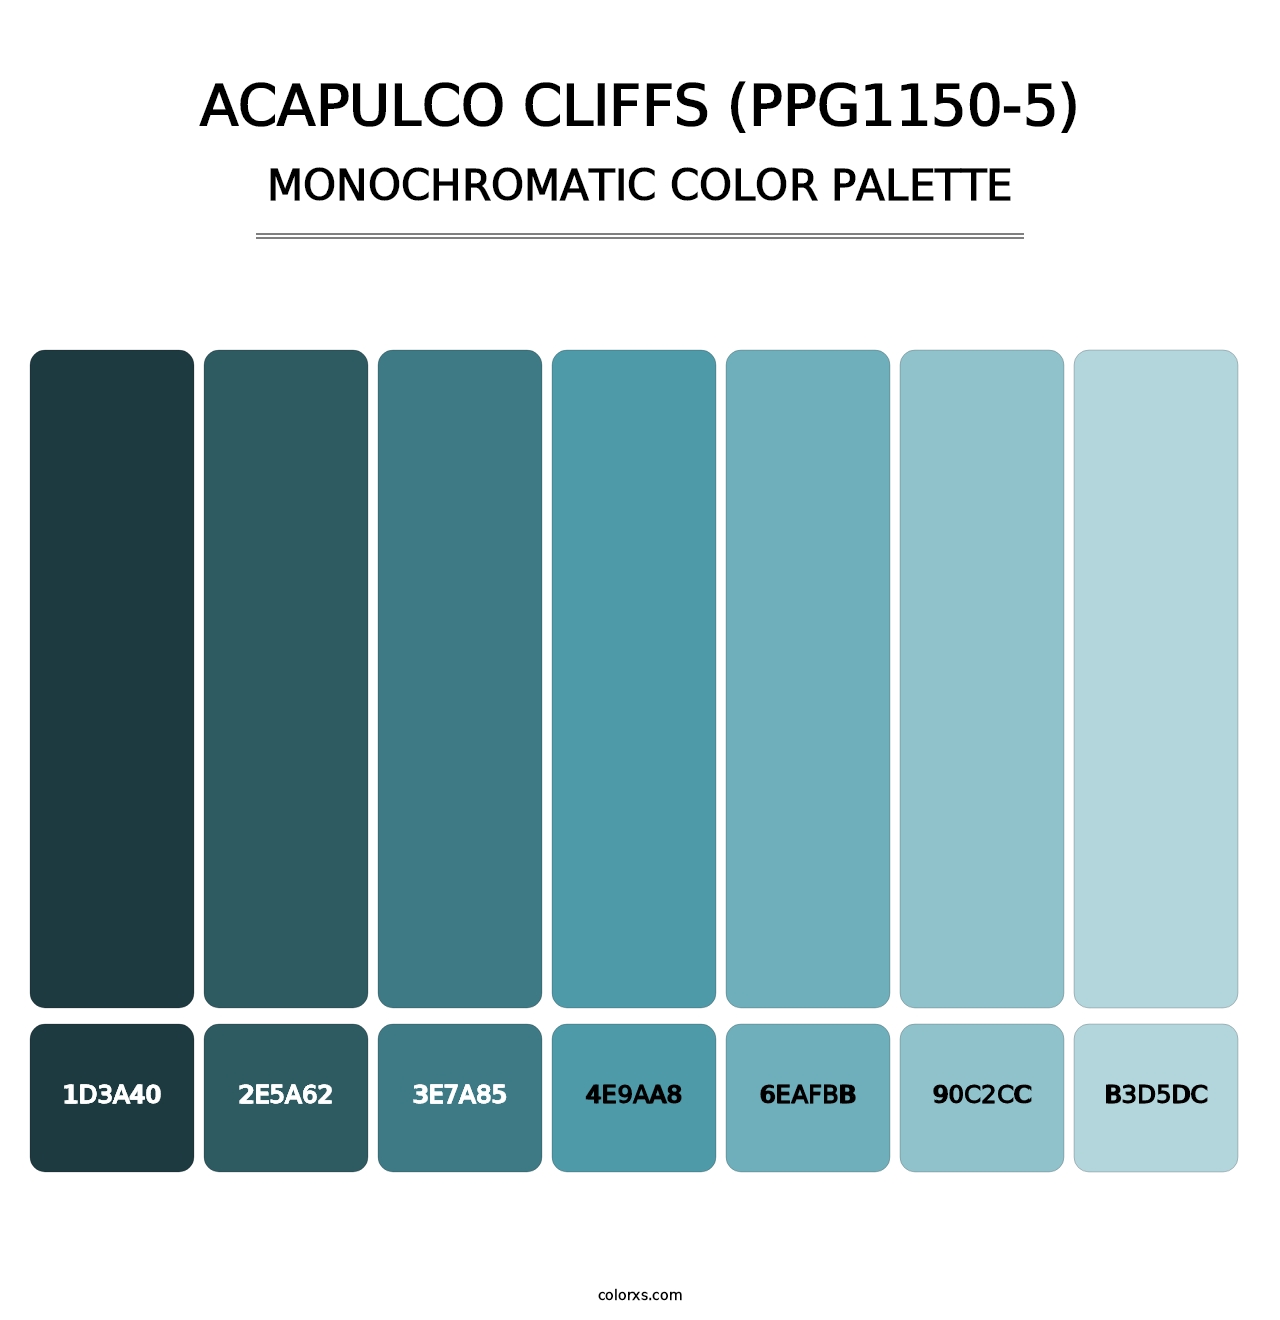 Acapulco Cliffs (PPG1150-5) - Monochromatic Color Palette